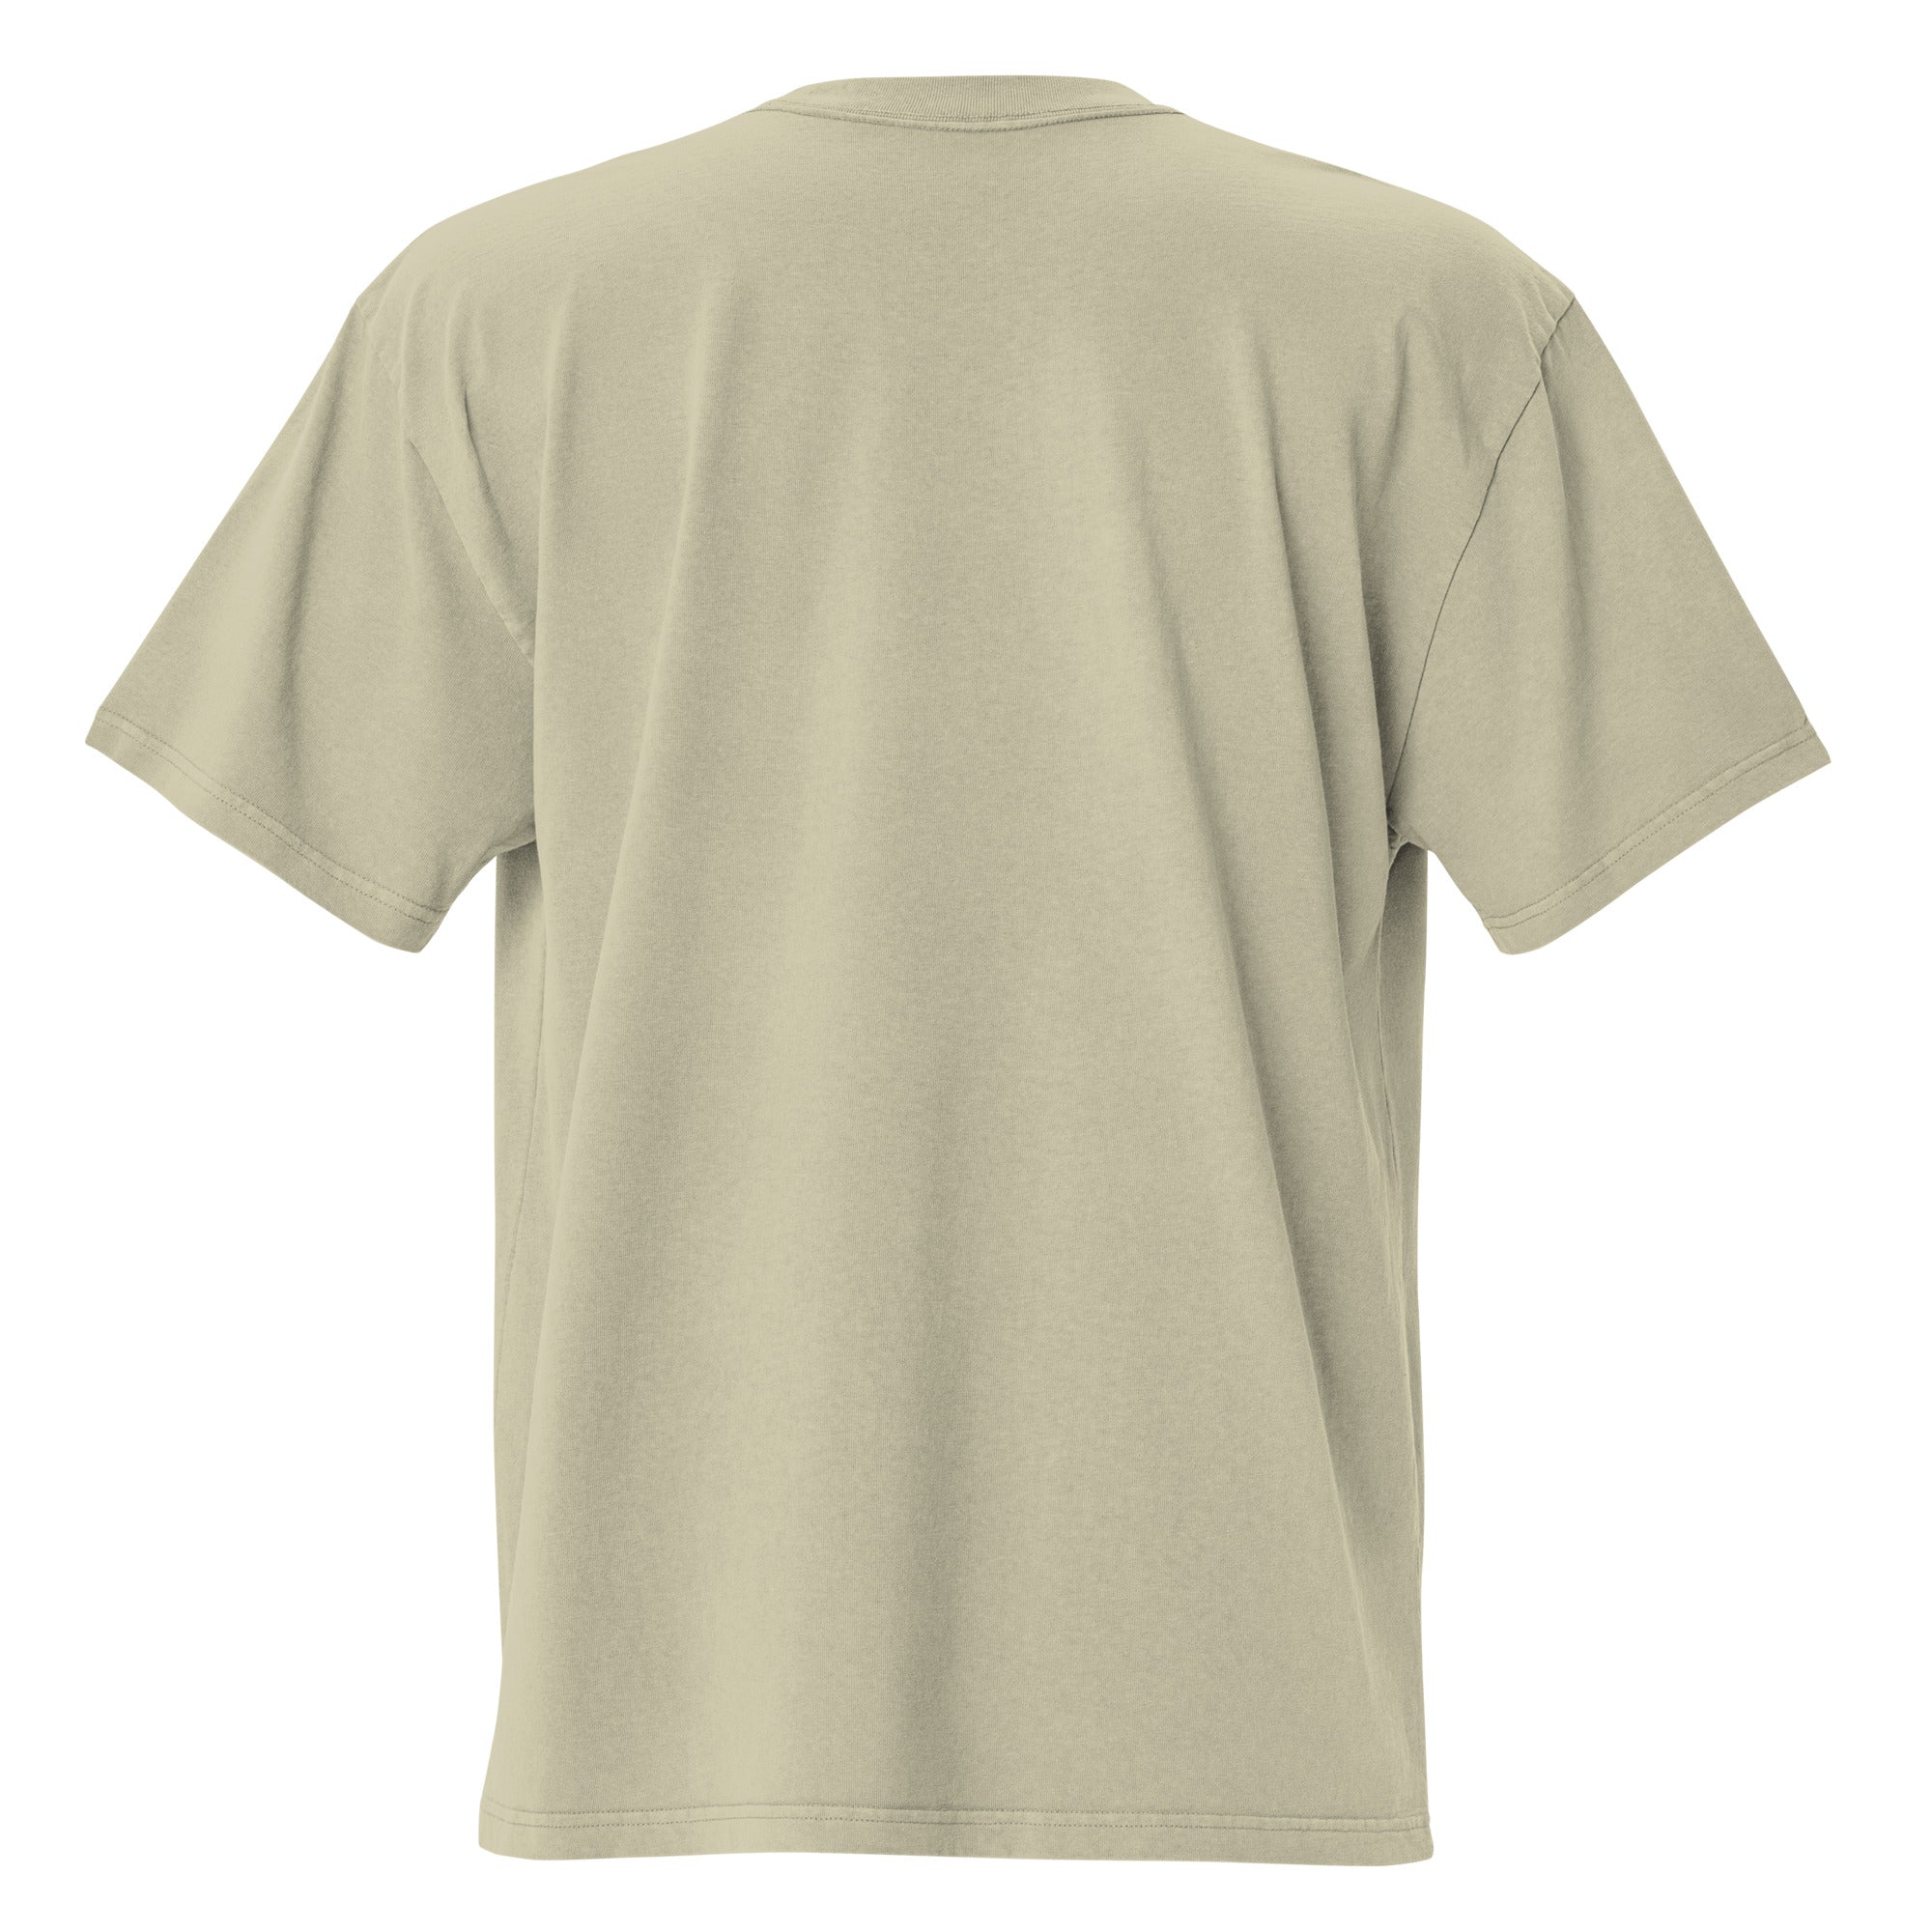 T-shirt oversize épais en coton Keep The Sea Clean bleu clair grand motif brodé